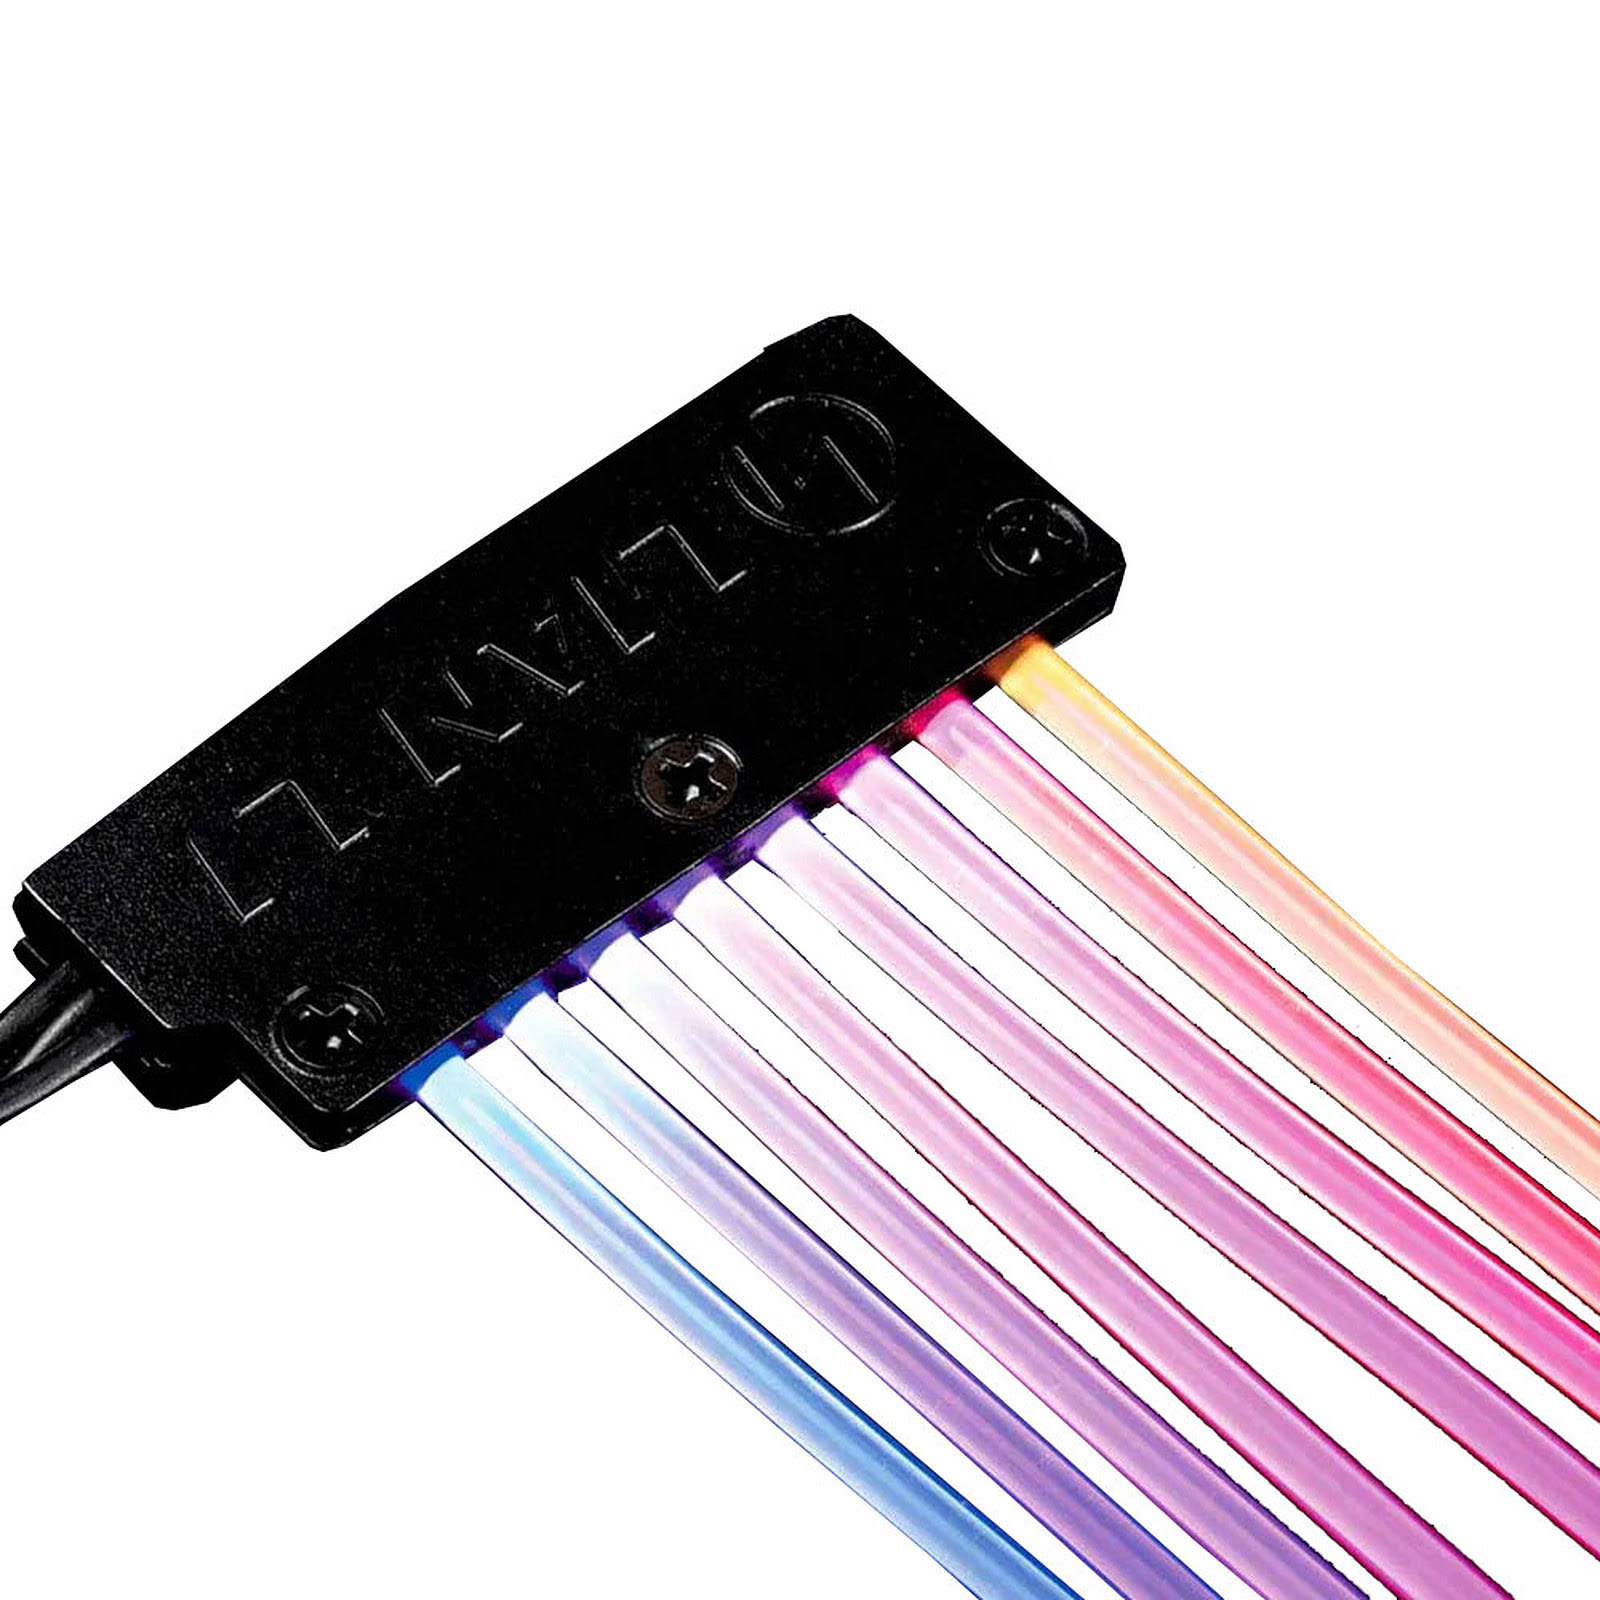 Nappe alimentation CG RGB - Strimer plus 2x8 pins - Connectique PC - 0